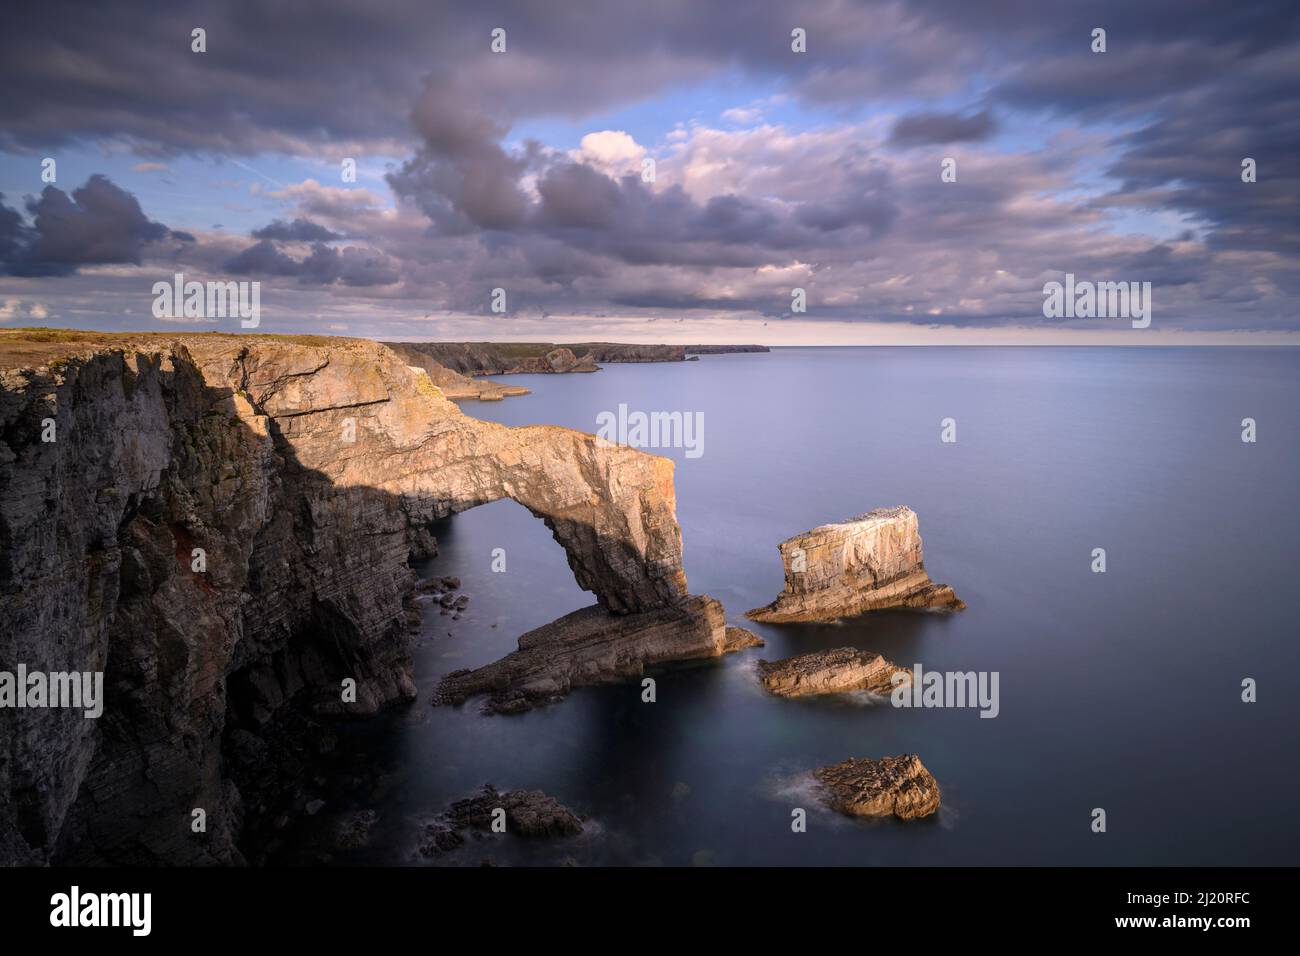 L'arche de mer du pont vert du pays de Galles, Castlemartin, Pembrokeshire, pays de Galles, Royaume-Uni, Septembre. Banque D'Images